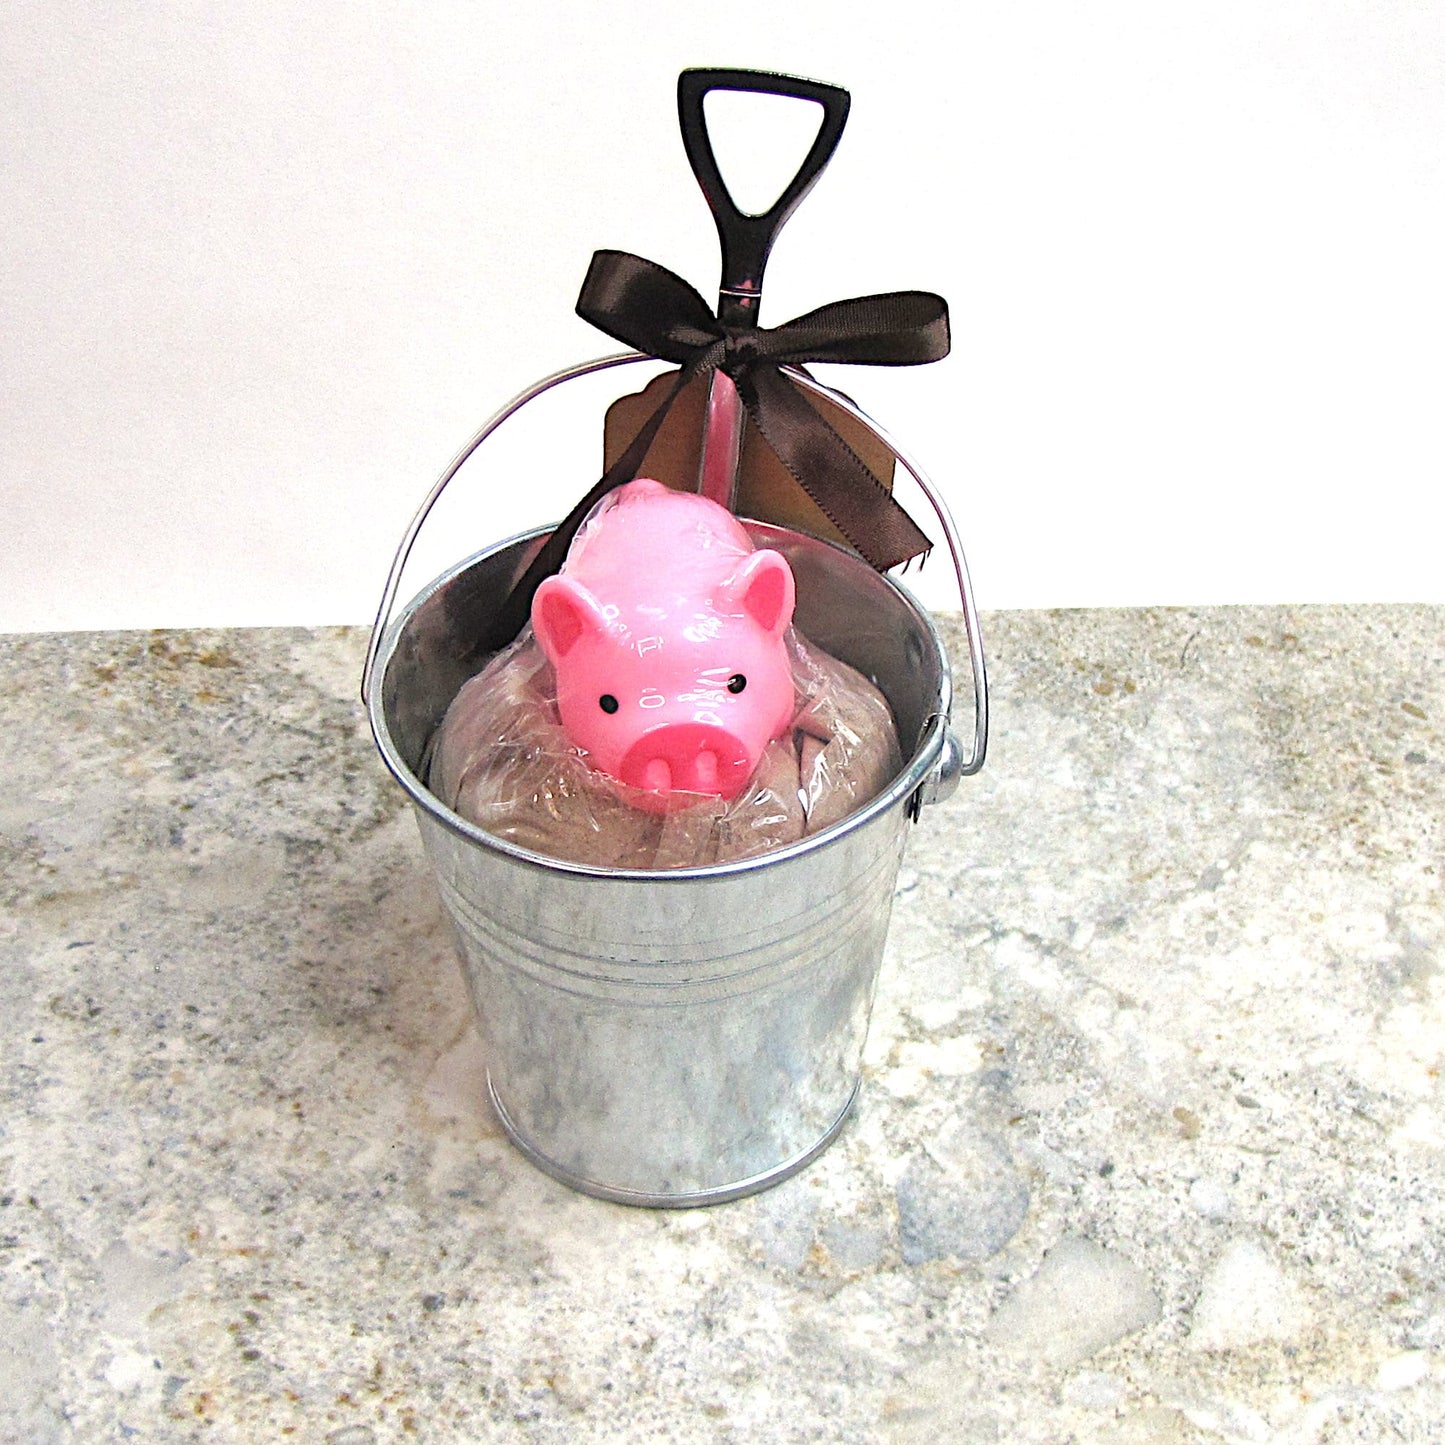 Mud Bath, Foaming Bath Powder with Piggy Bath Toy